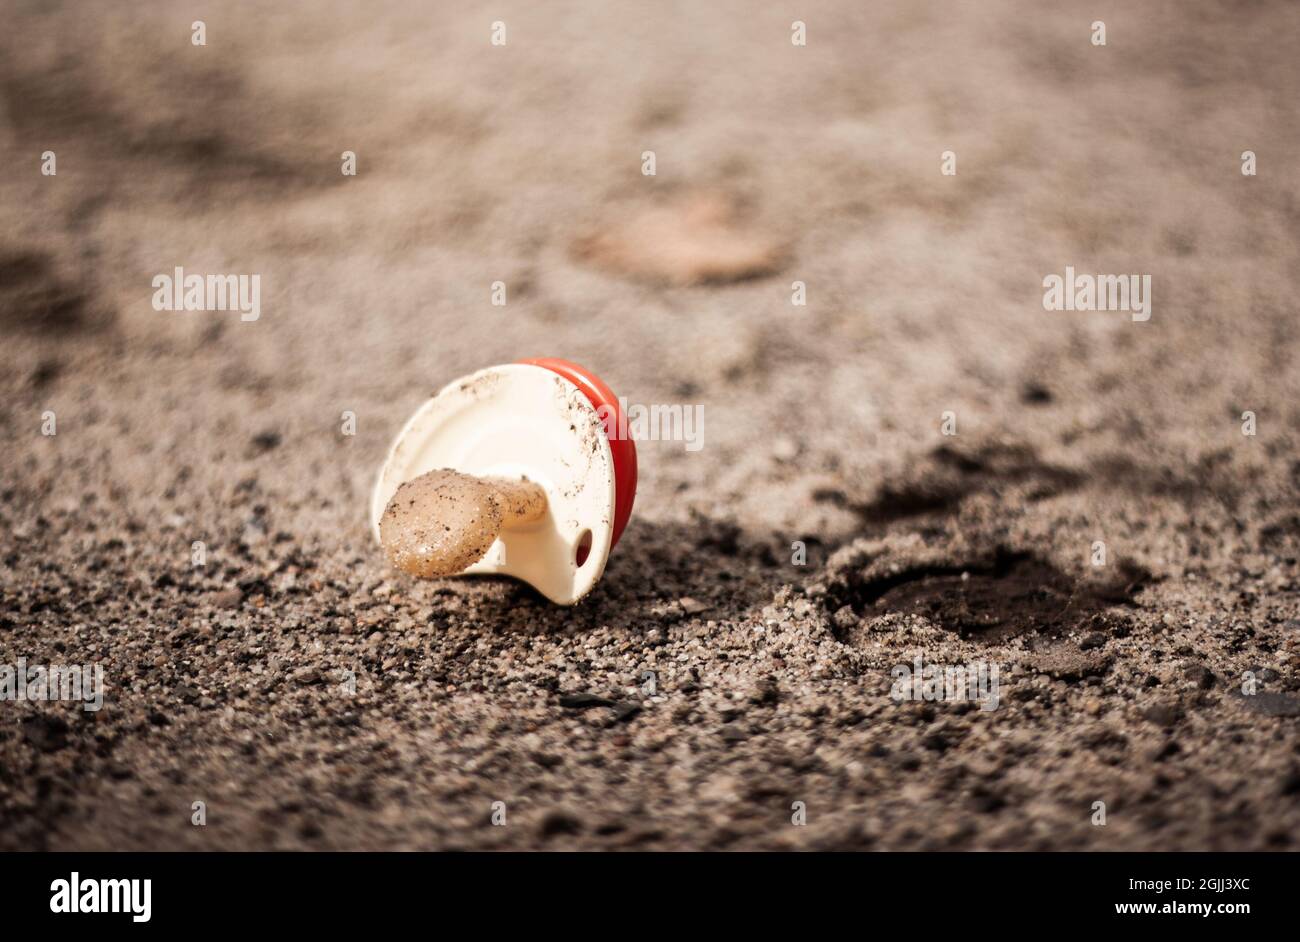 Schmutziger Babyschnuller auf dem Boden isoliert | Nahaufnahme des Babyschnupfes auf dem Boden liegend Baby-Schnuller mit Sand und Schmutz auf dem Boden bedeckt Stockfoto